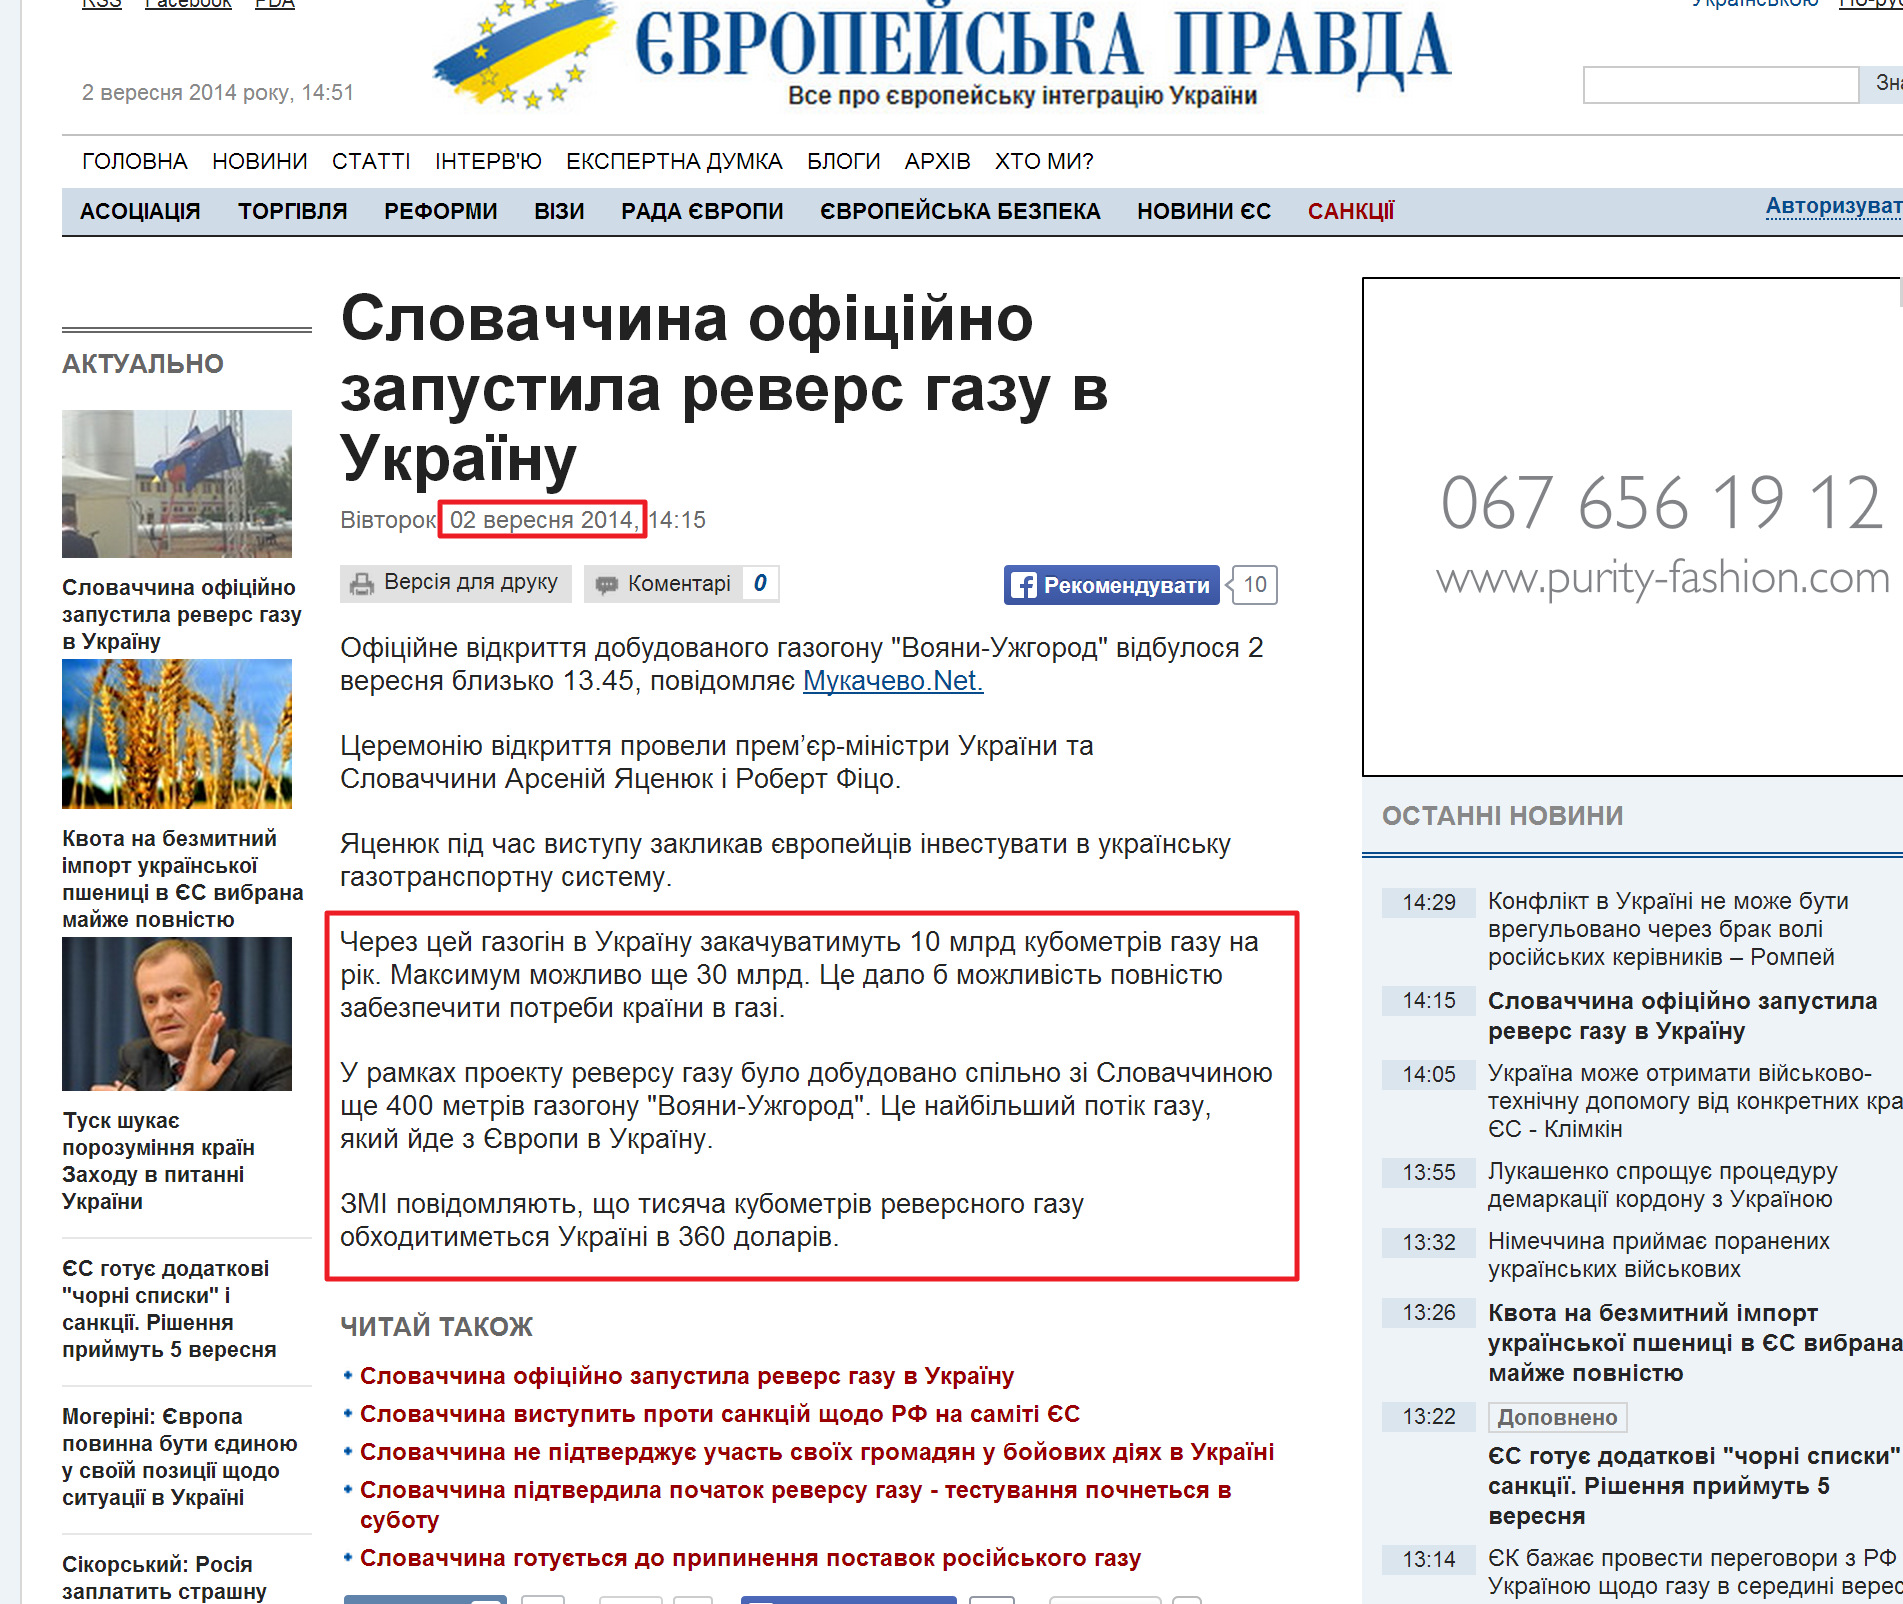 http://www.eurointegration.com.ua/news/2014/09/2/7025606/